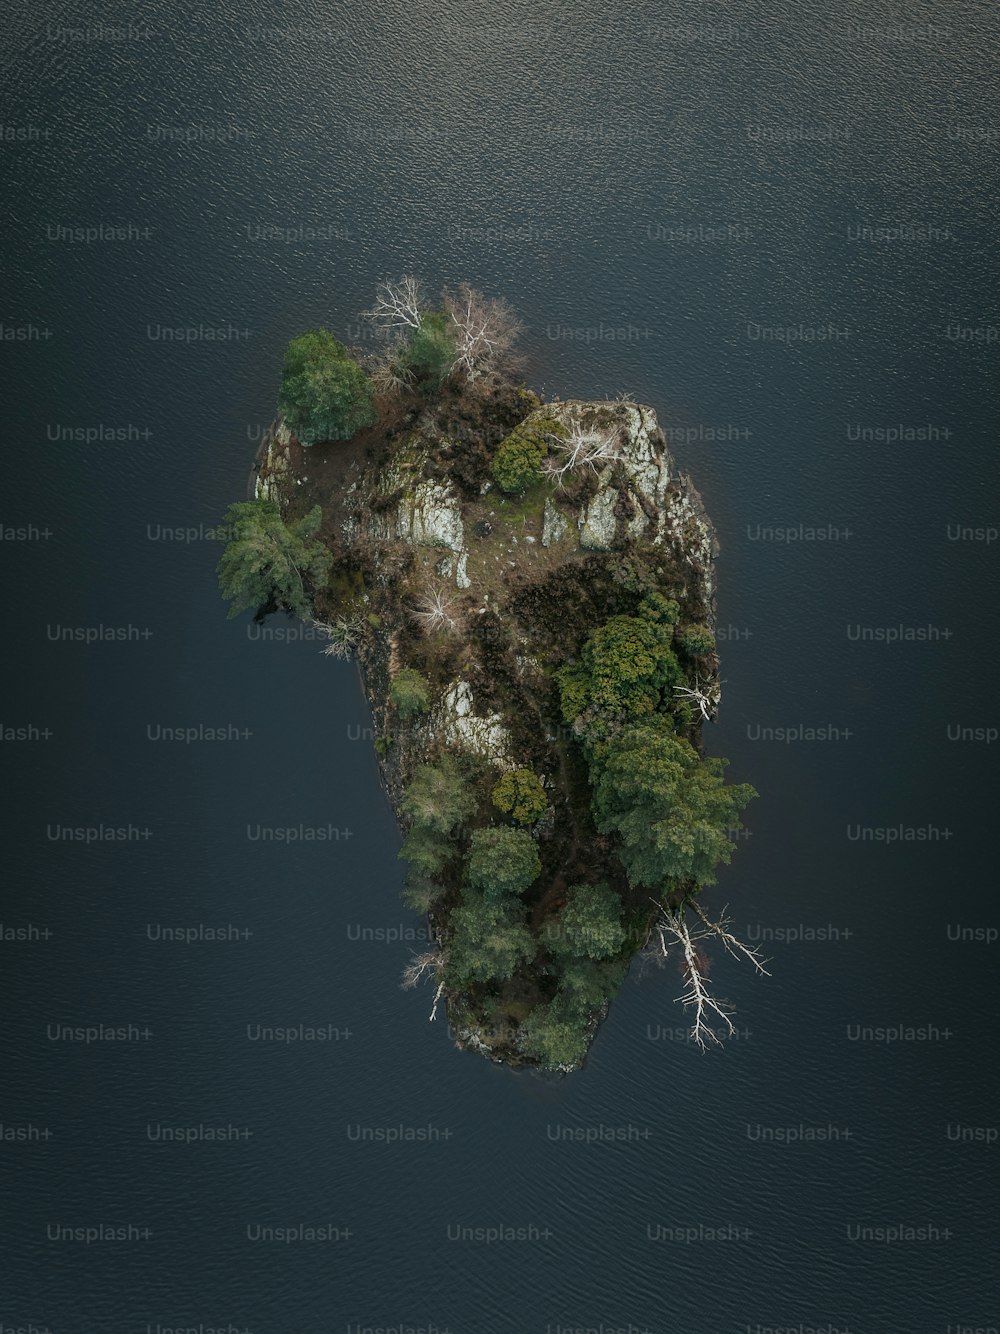 Una pequeña isla en medio de un cuerpo de agua